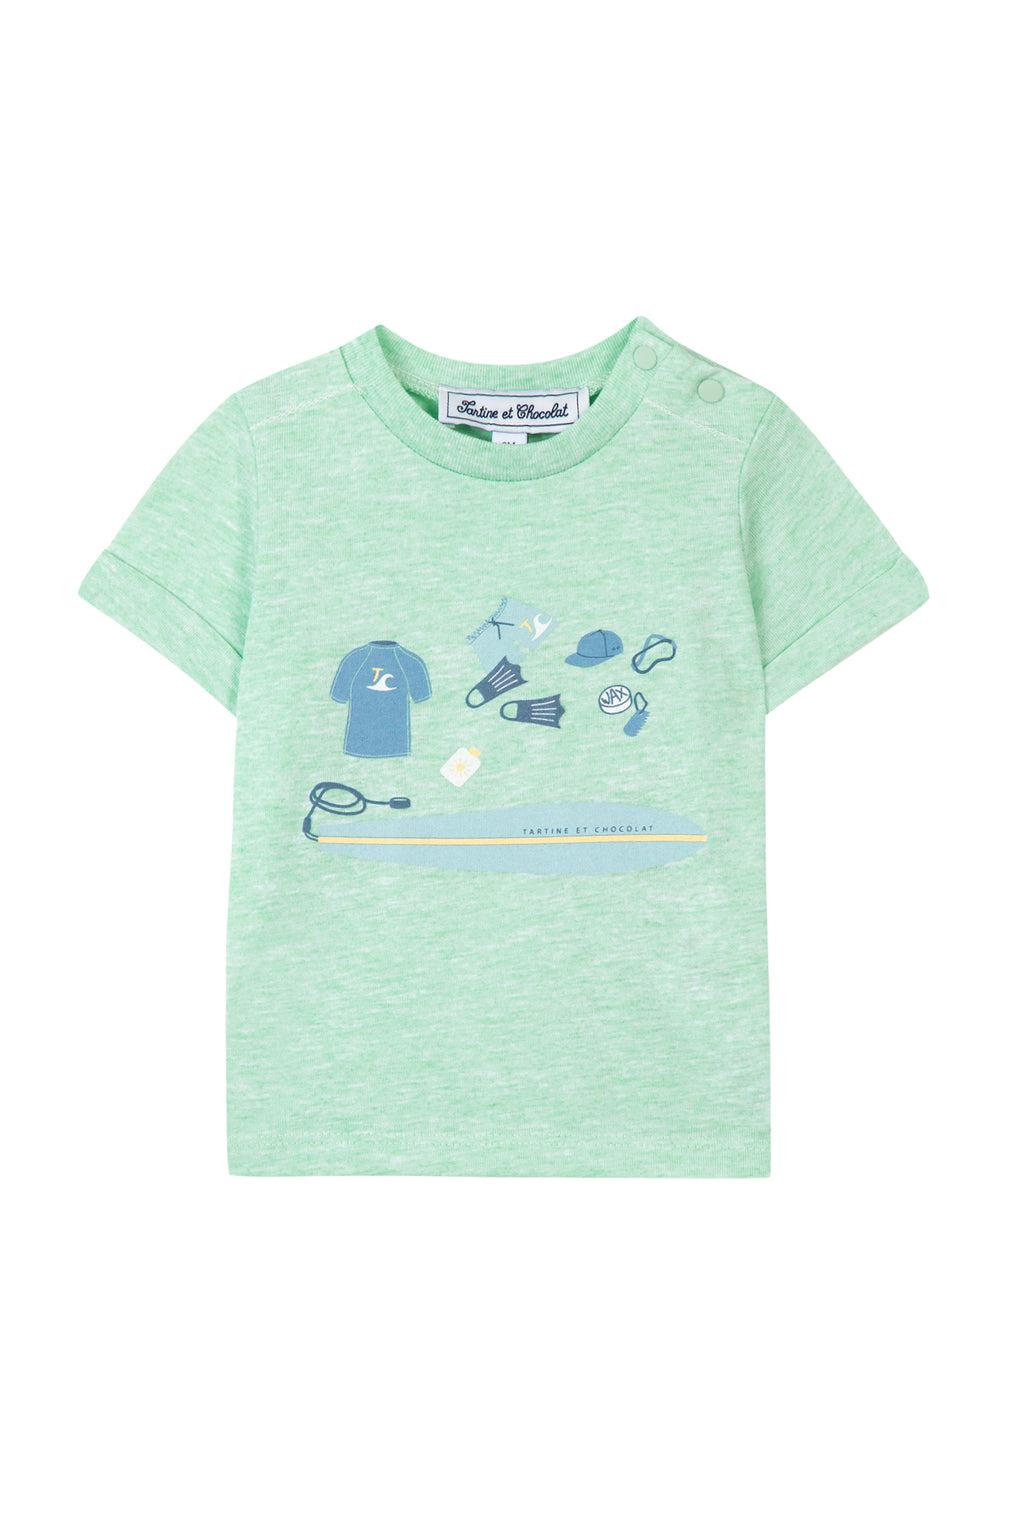 T-shirt -  Green Illustration surfer